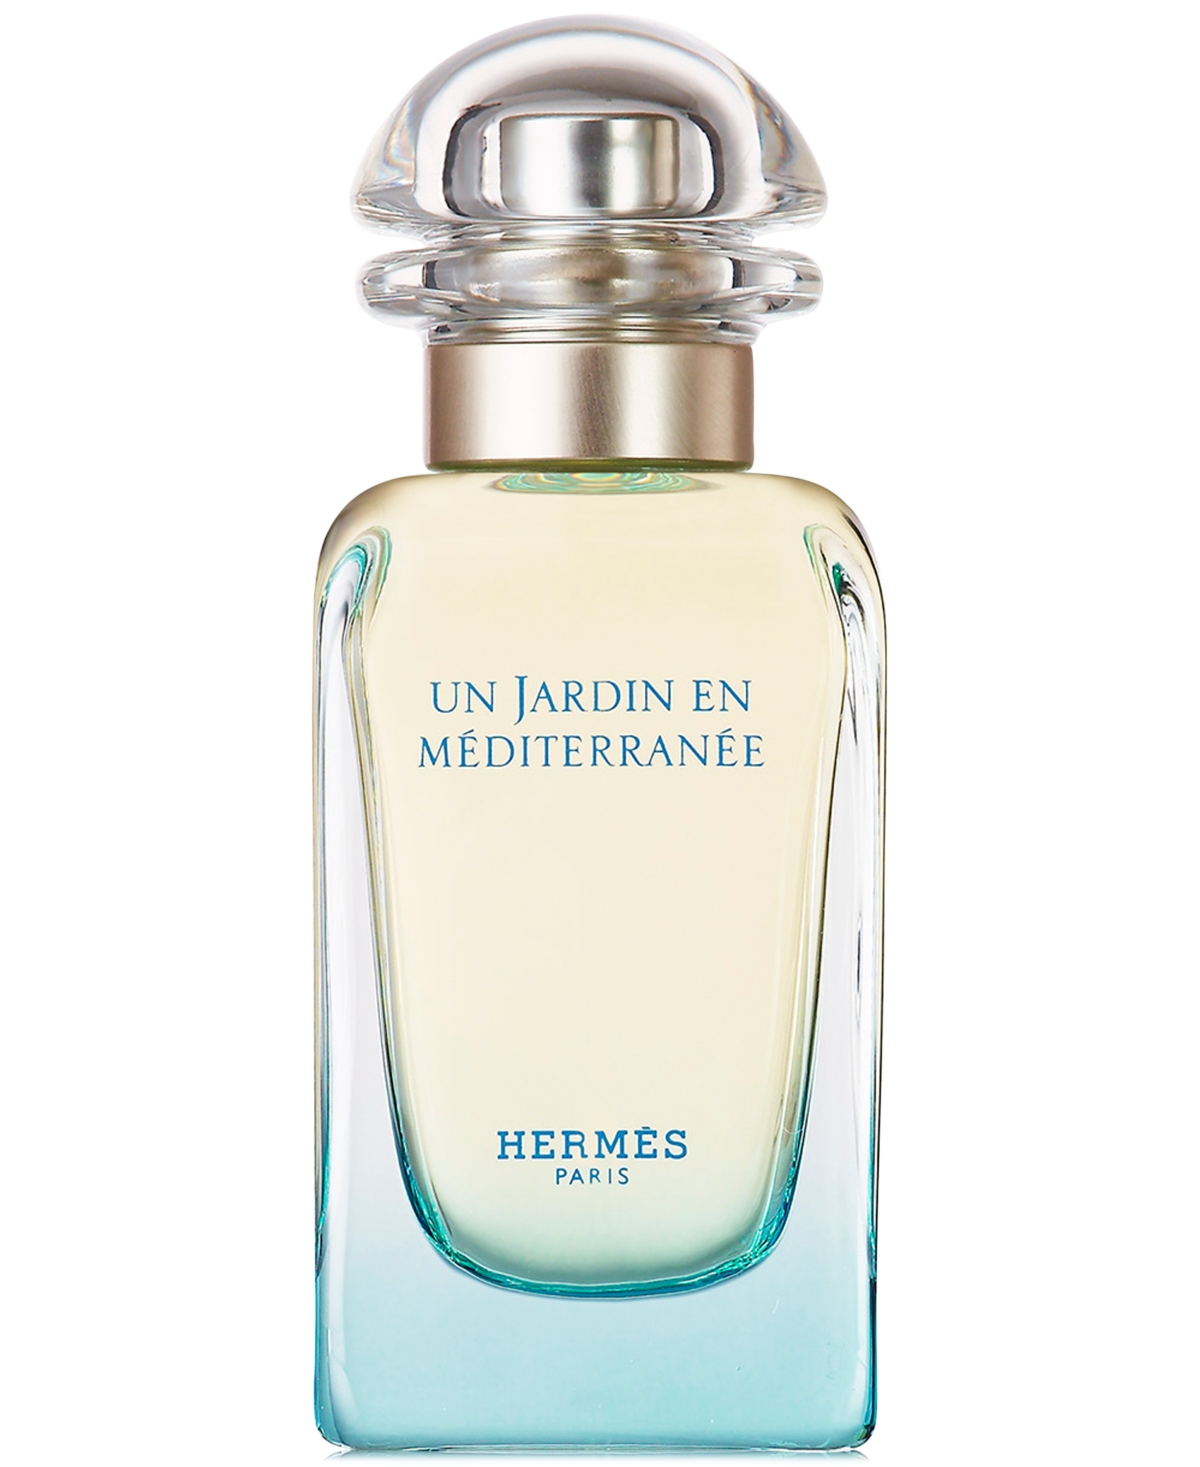 HERMÈS Eau de Toilette, . & Reviews - Perfume - Beauty - Macy's